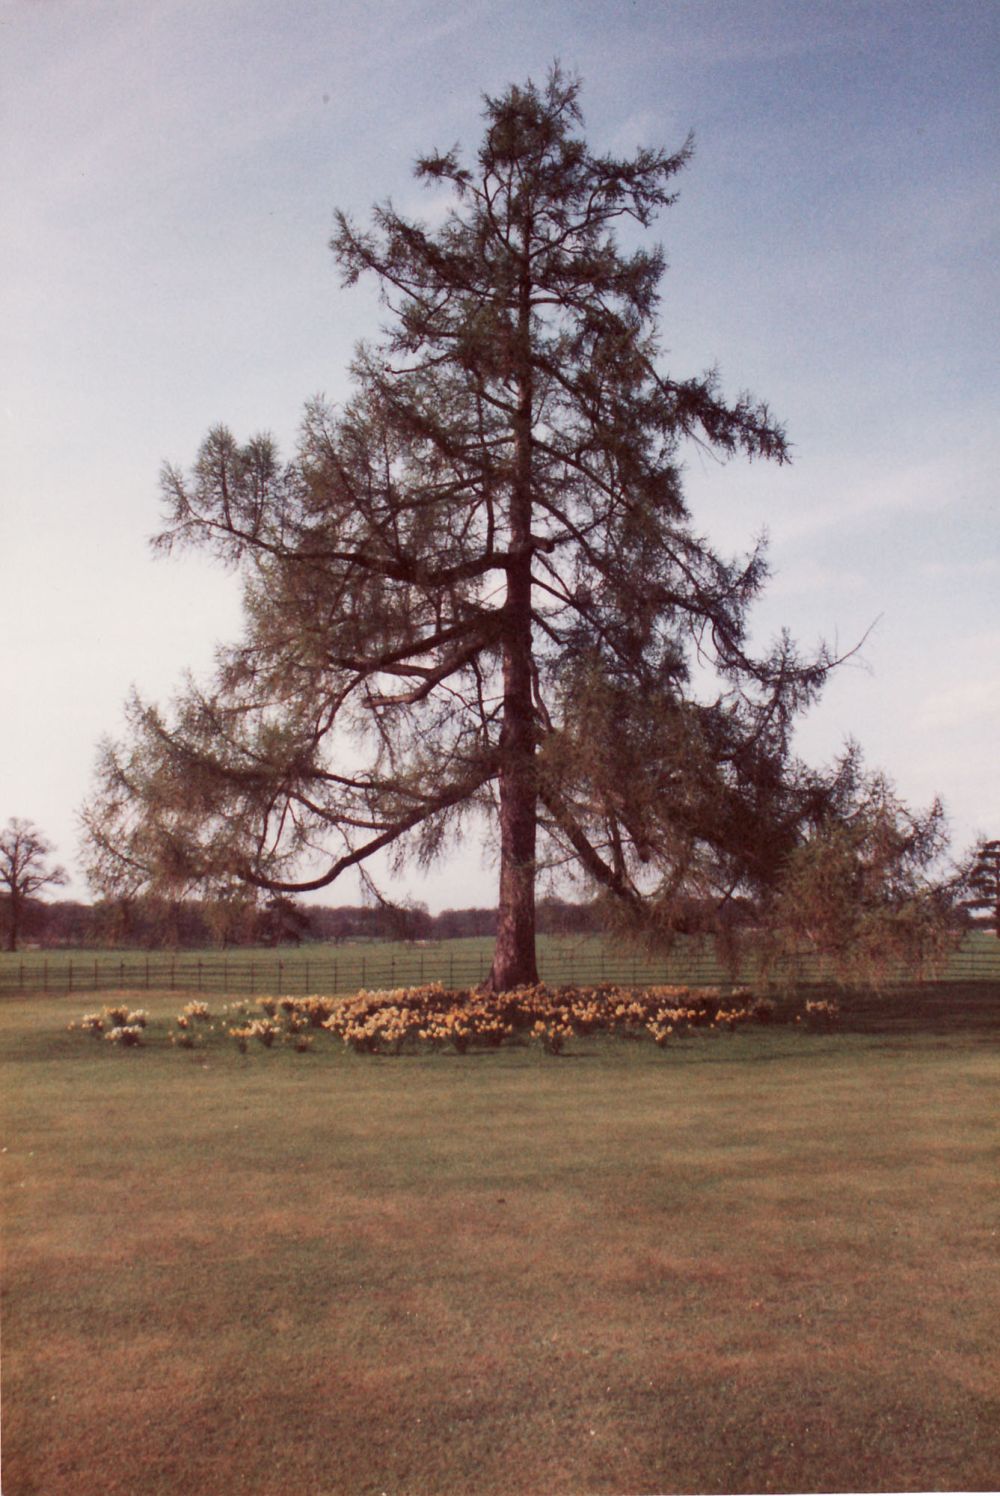 Nun Appleton Hall - large tree in park